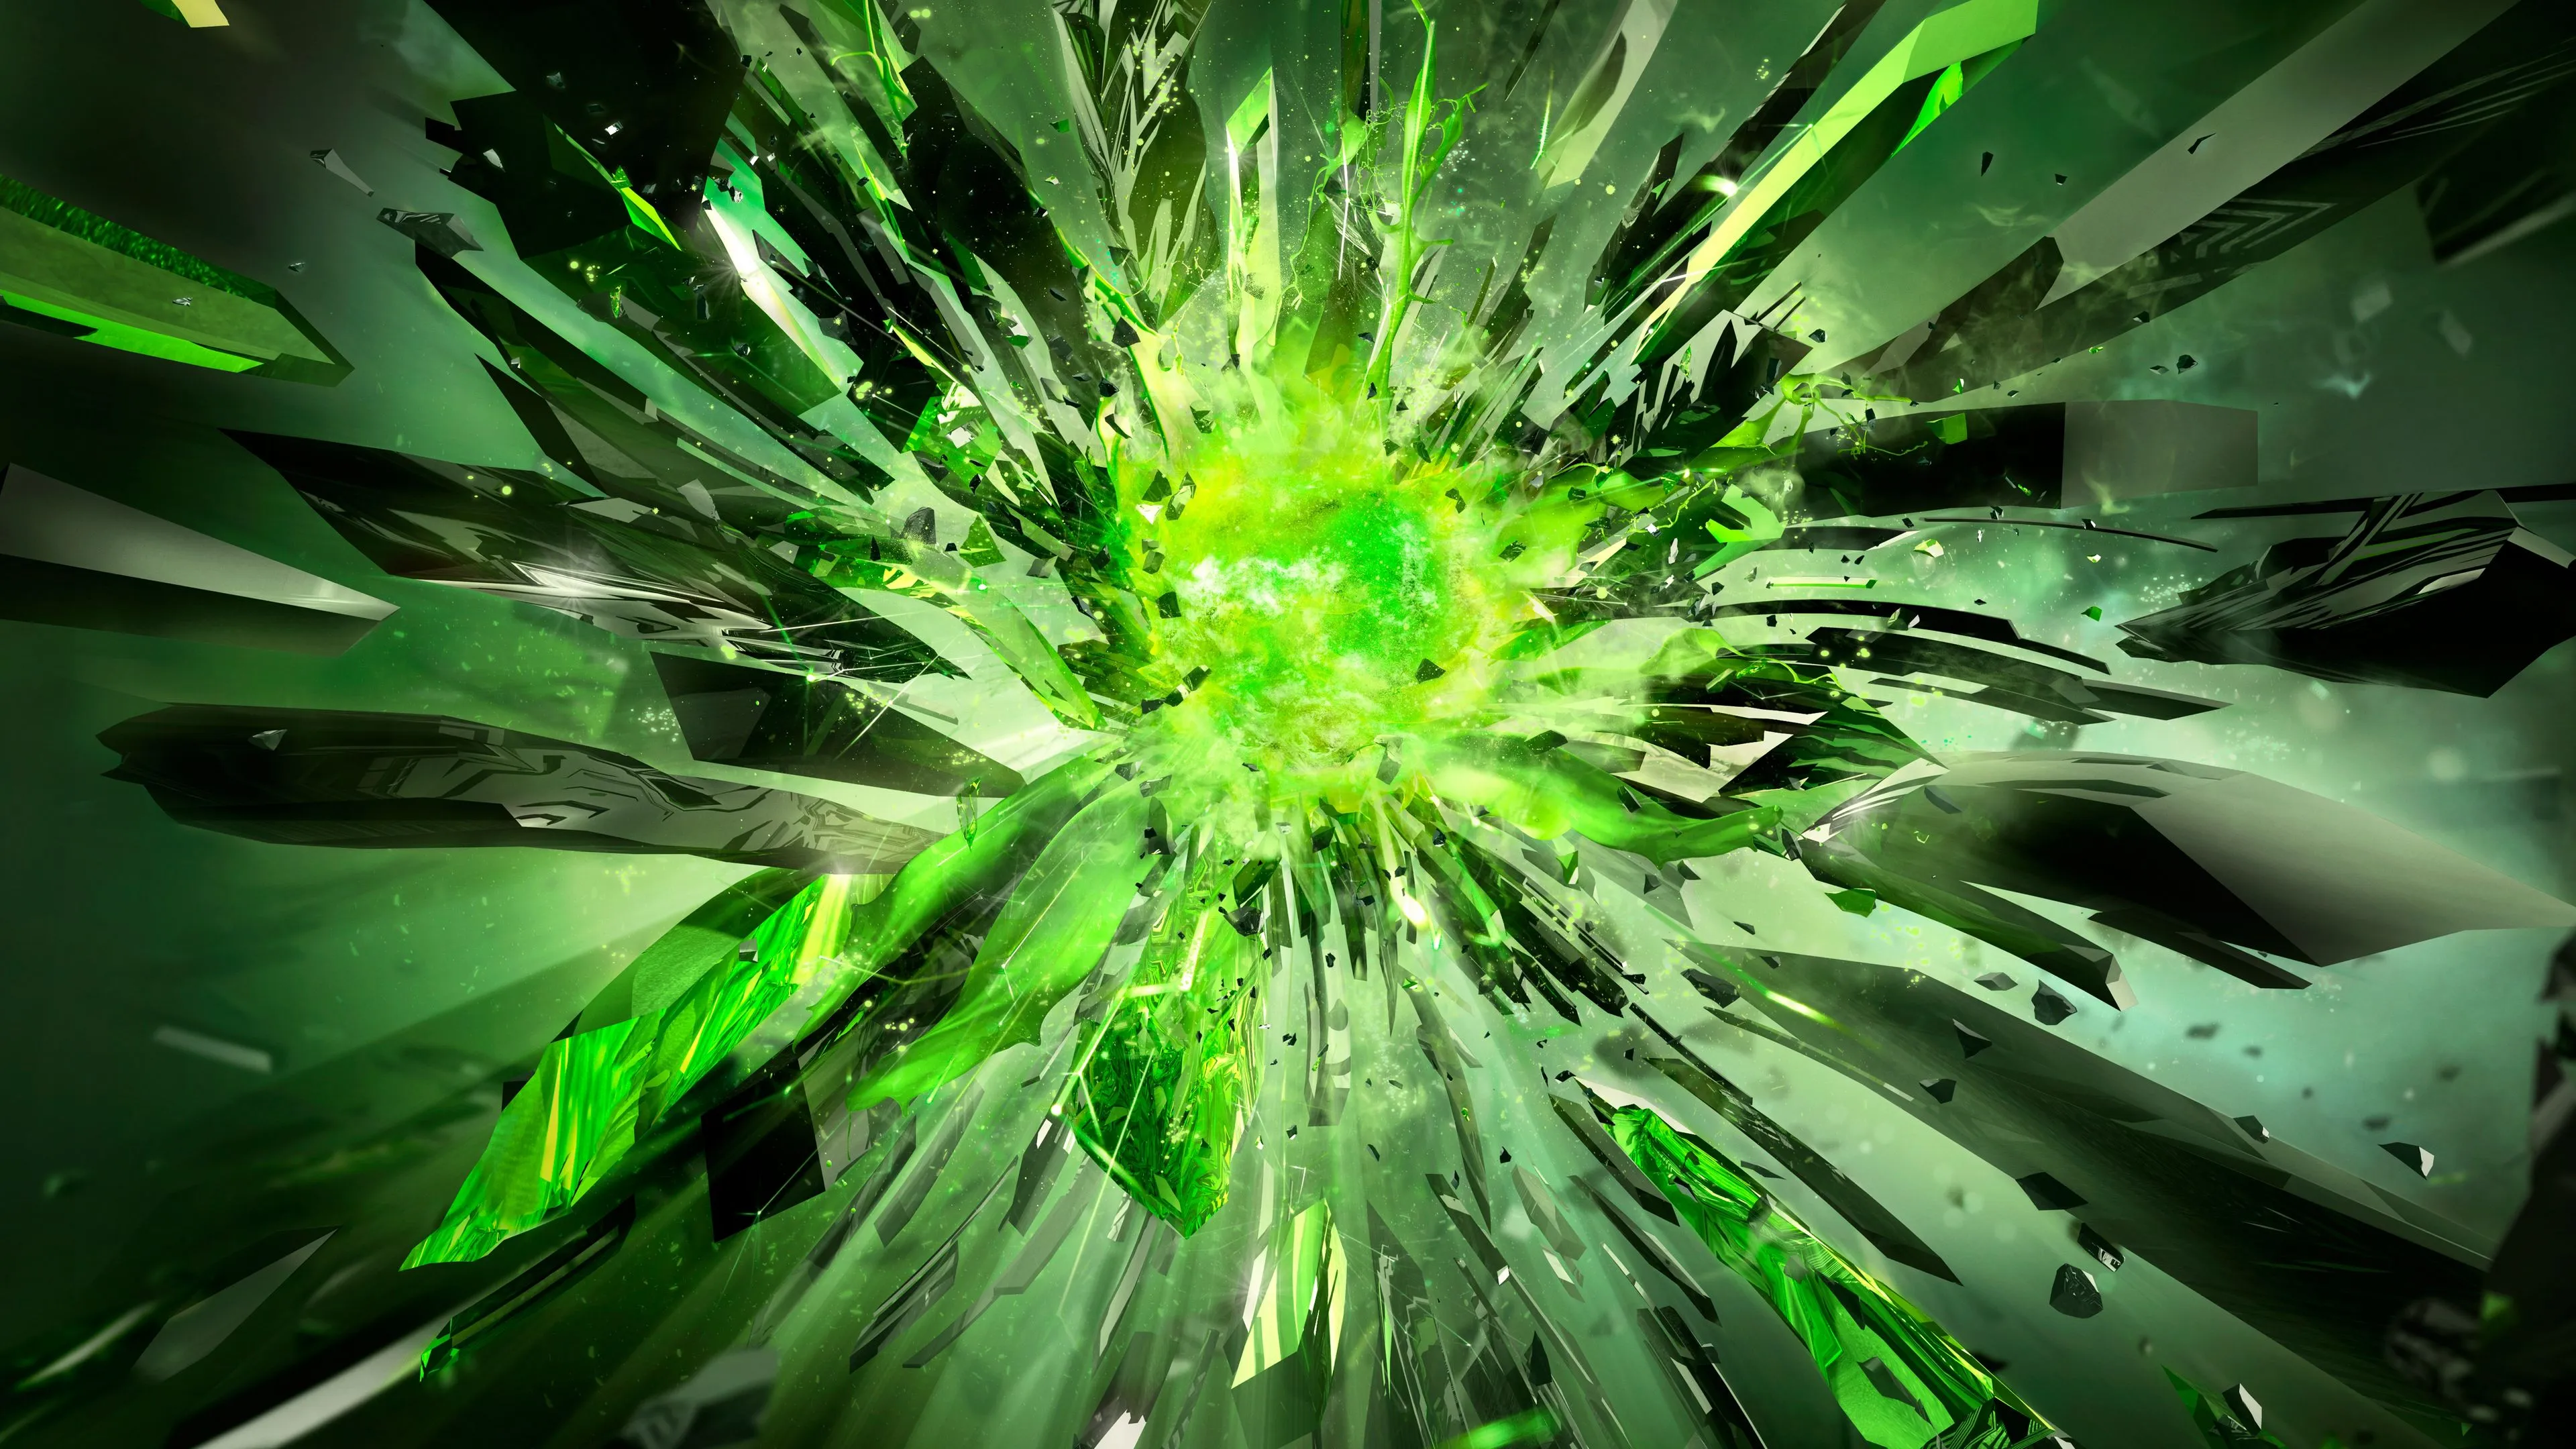 crystals debris explosion light 4k 1691575448